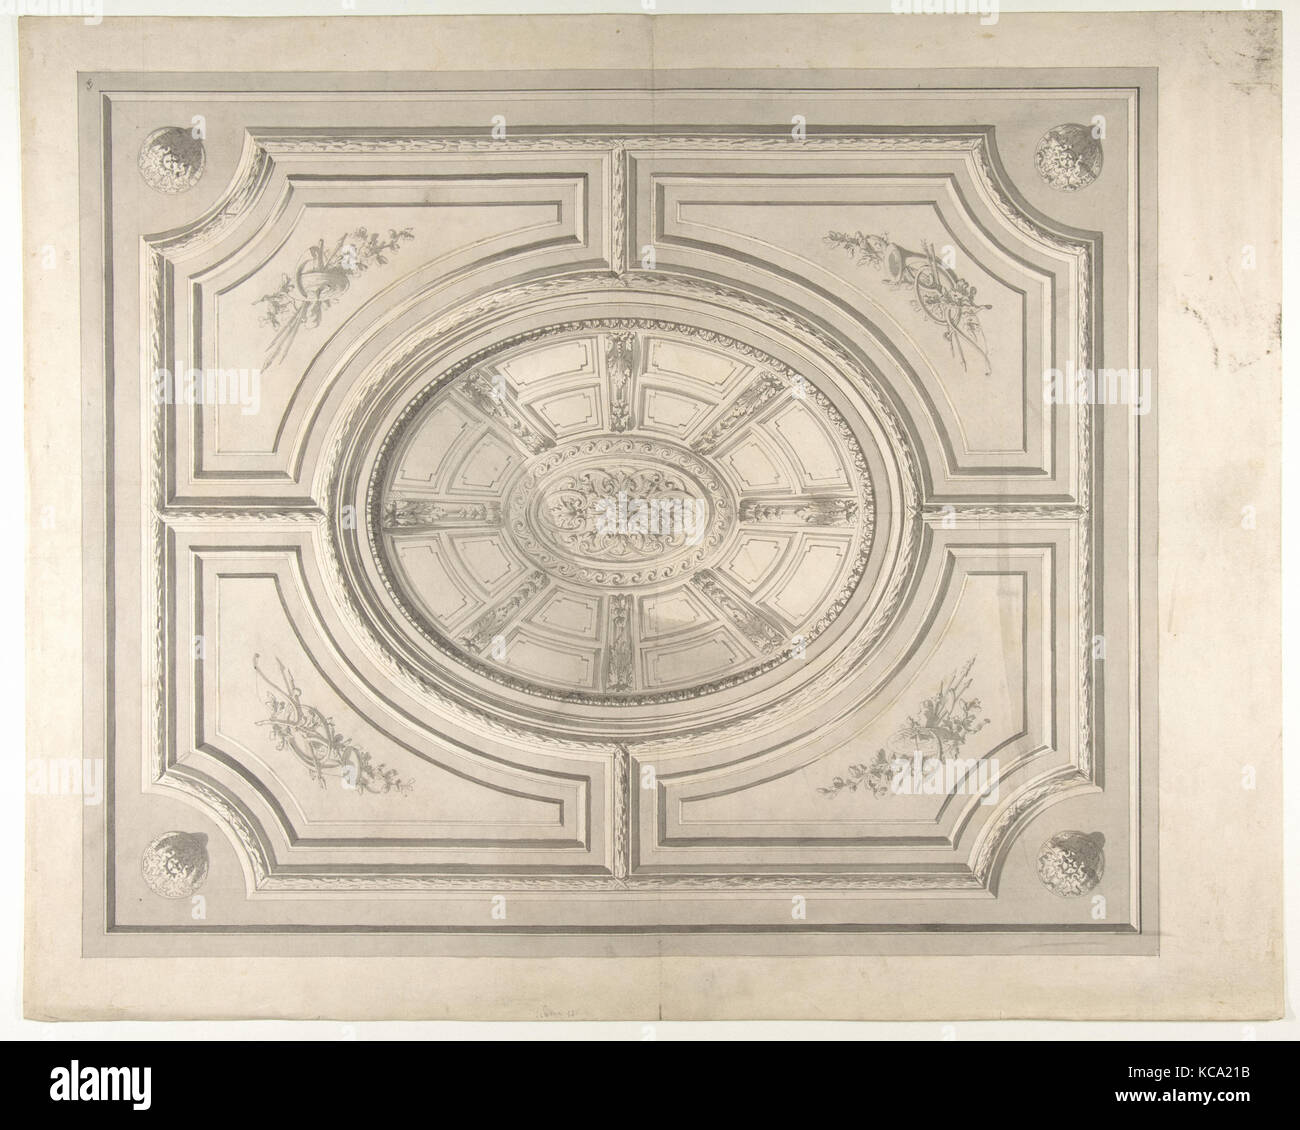 Conception d'un plafond avec des trophées et un trompe-l'oeil, coffres Jules-Edmond-Charles Lachaise, 1830-97 Banque D'Images